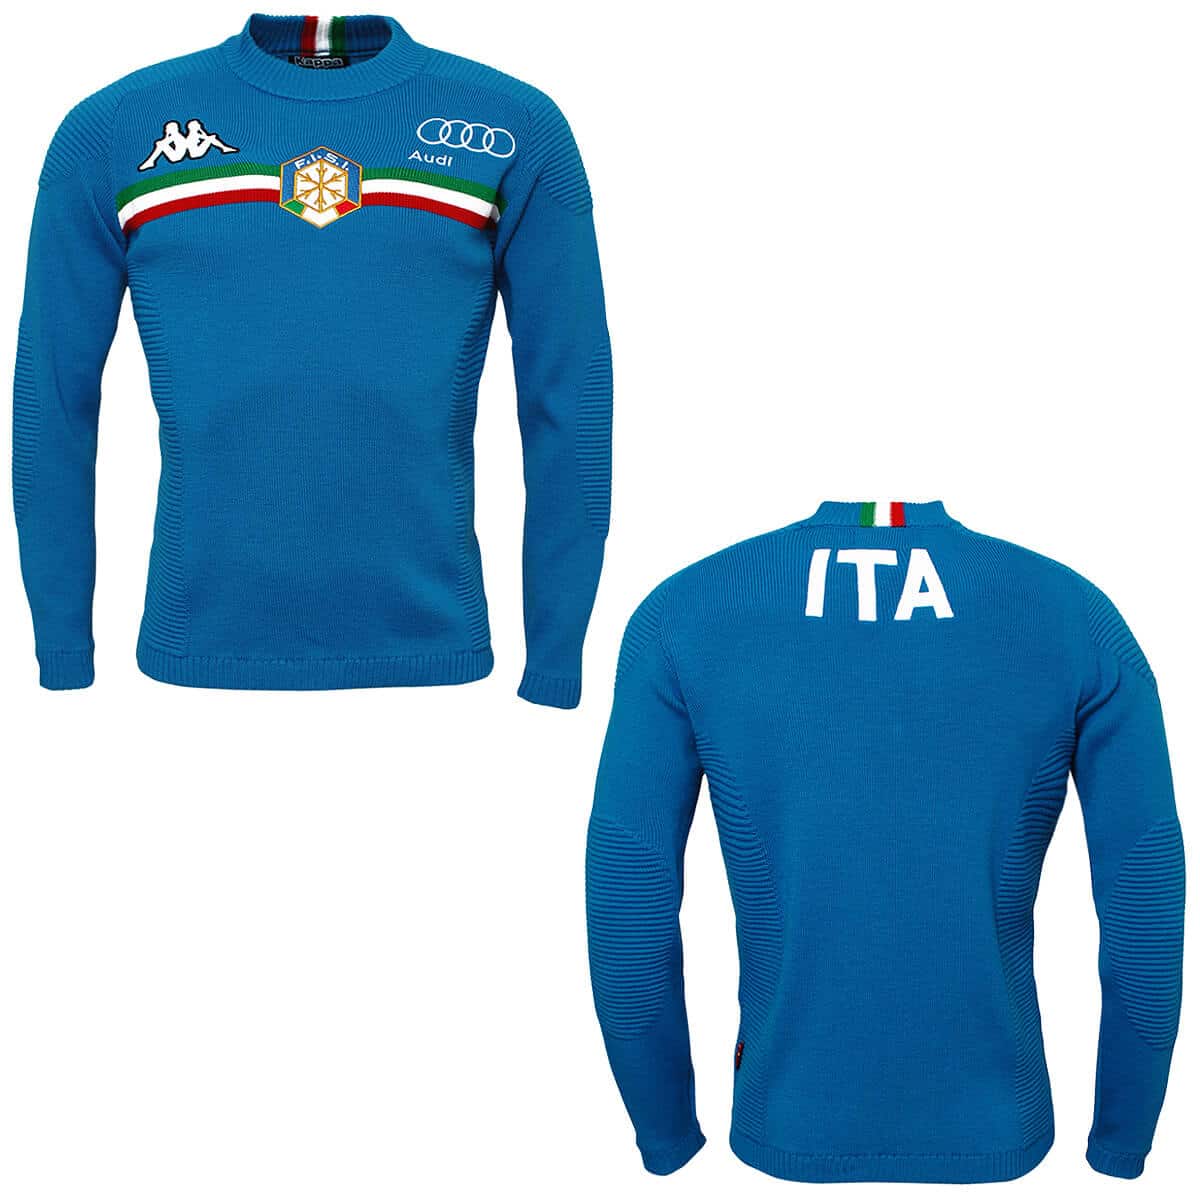 kappa italian ski team jacket